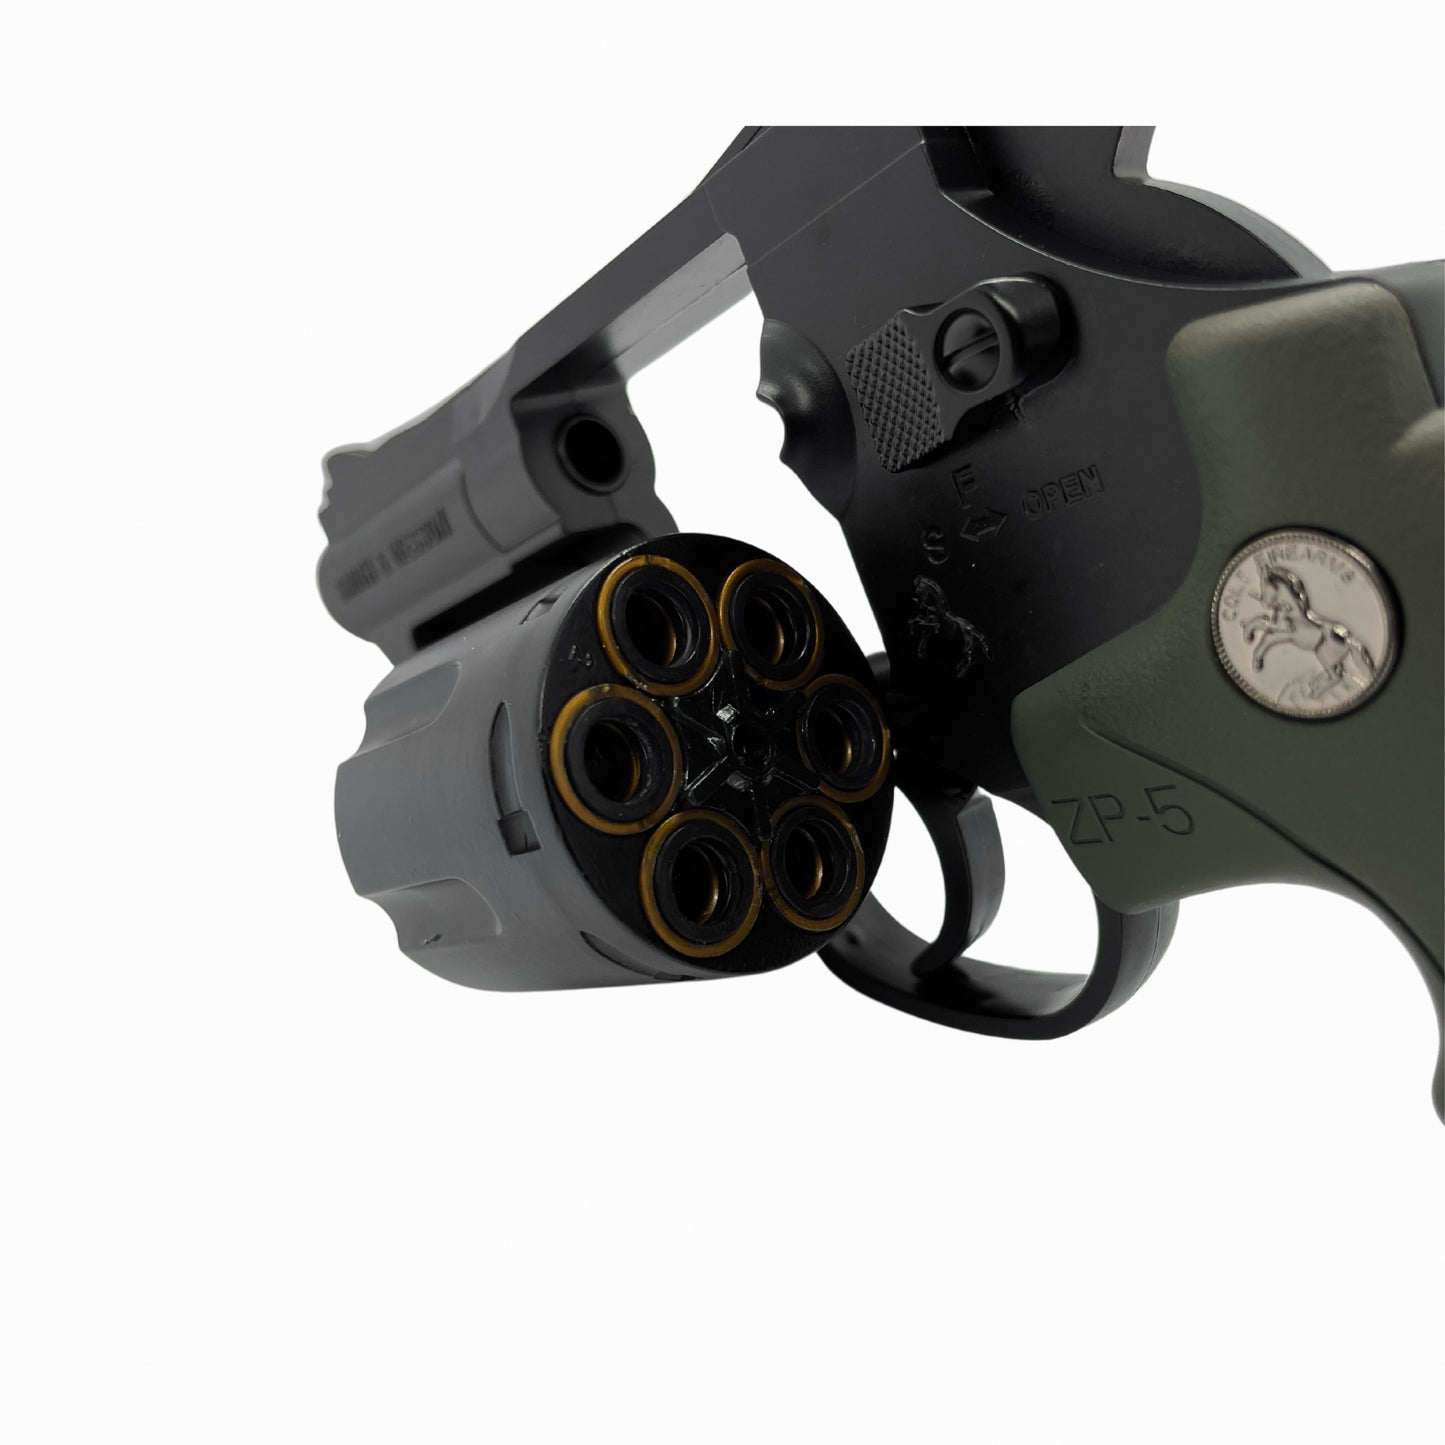 ZP5 Manual Revolver - Gel Blaster